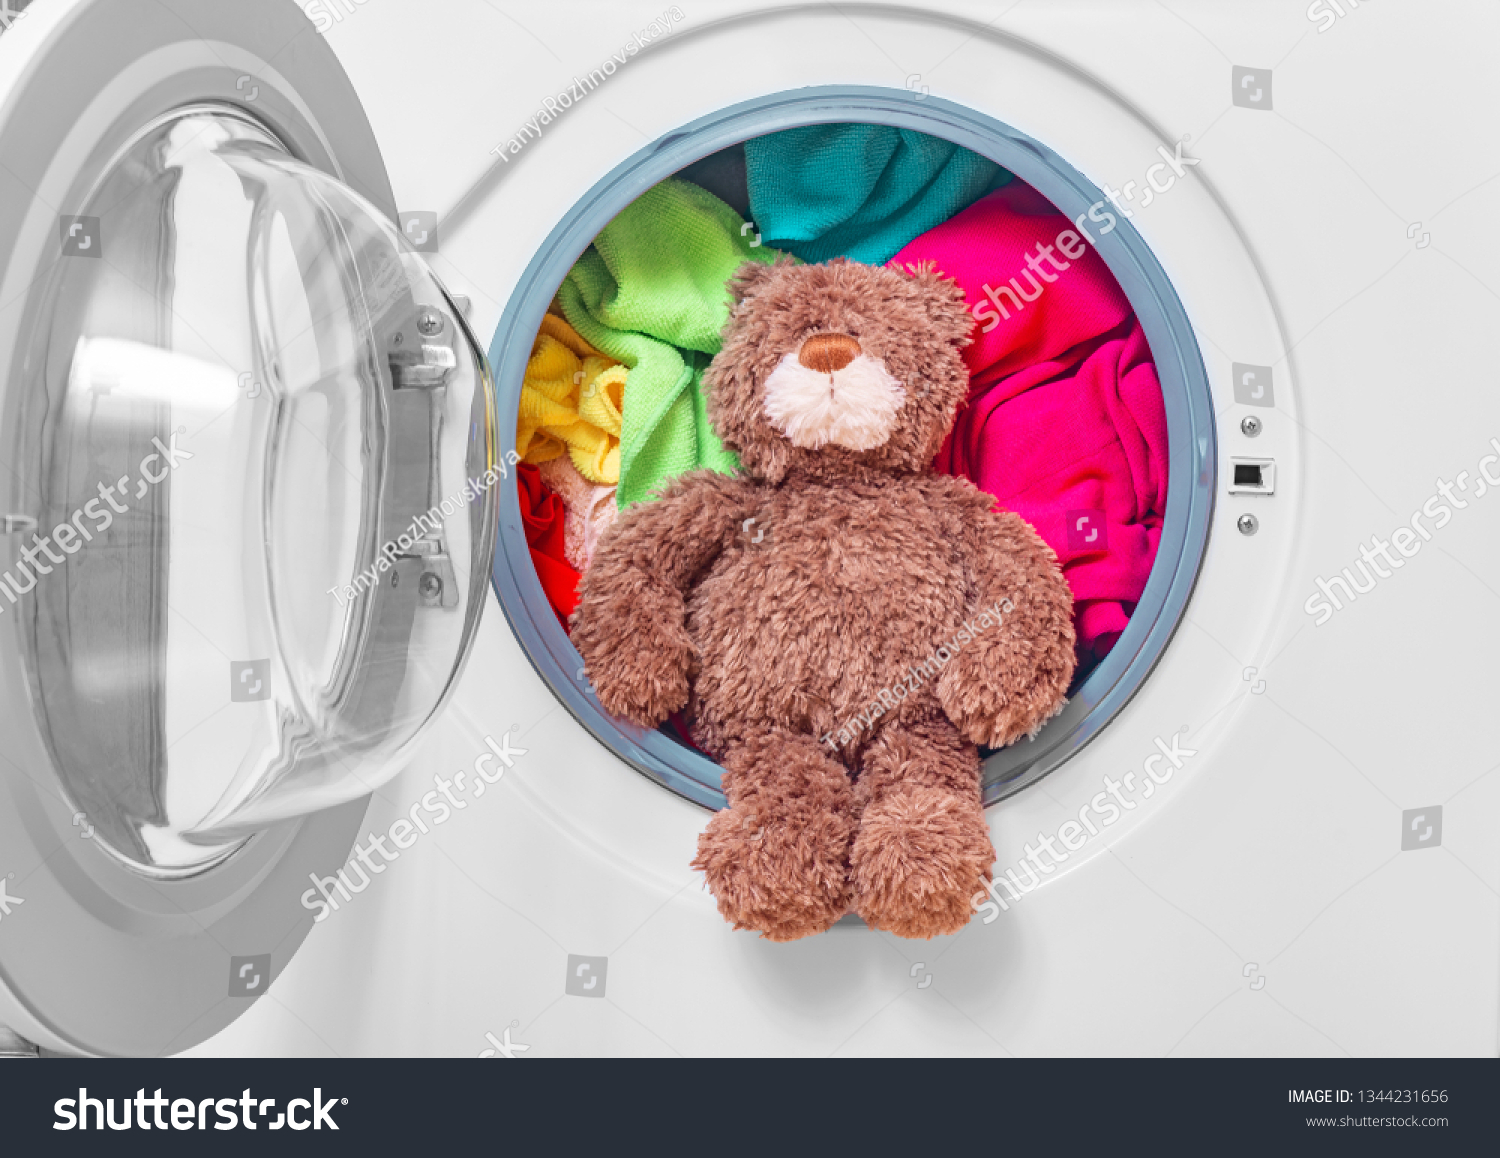 teddy bear in washing machine